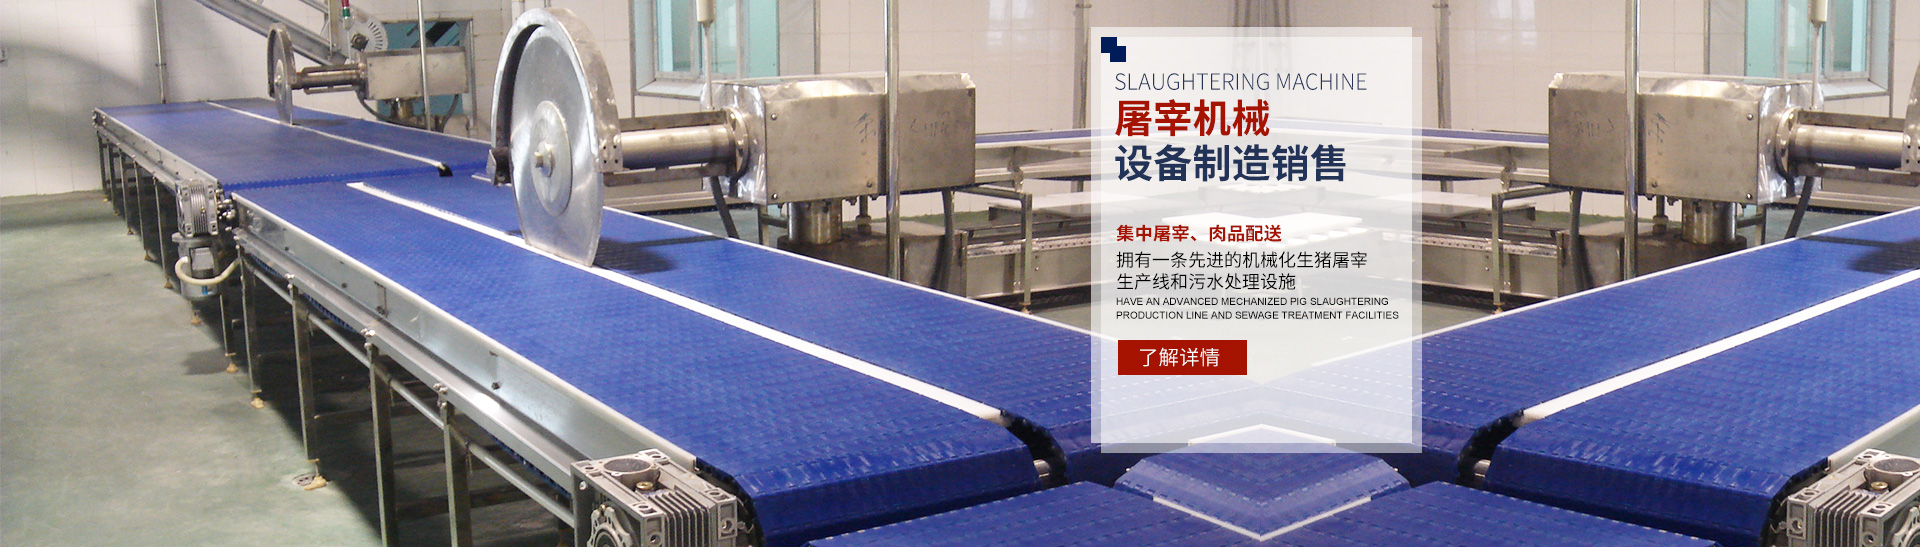 天博官方网站_湖南卧式放血输送机|不锈钢烫毛池销售